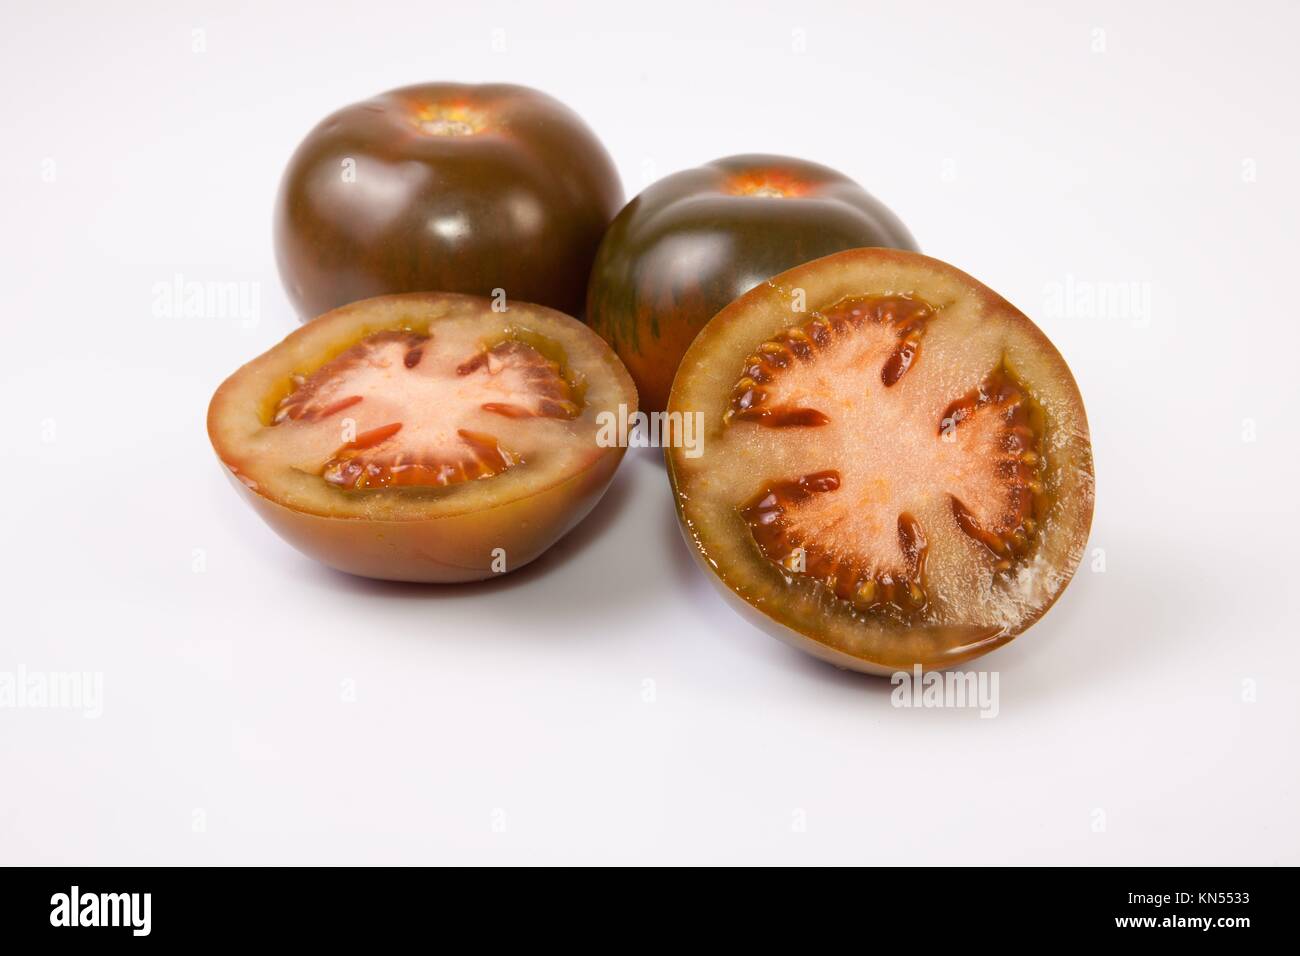 Verde oscuro tomates kumato, enteras o en rodajas. Aislado sobre fondo blanco. Foto de stock